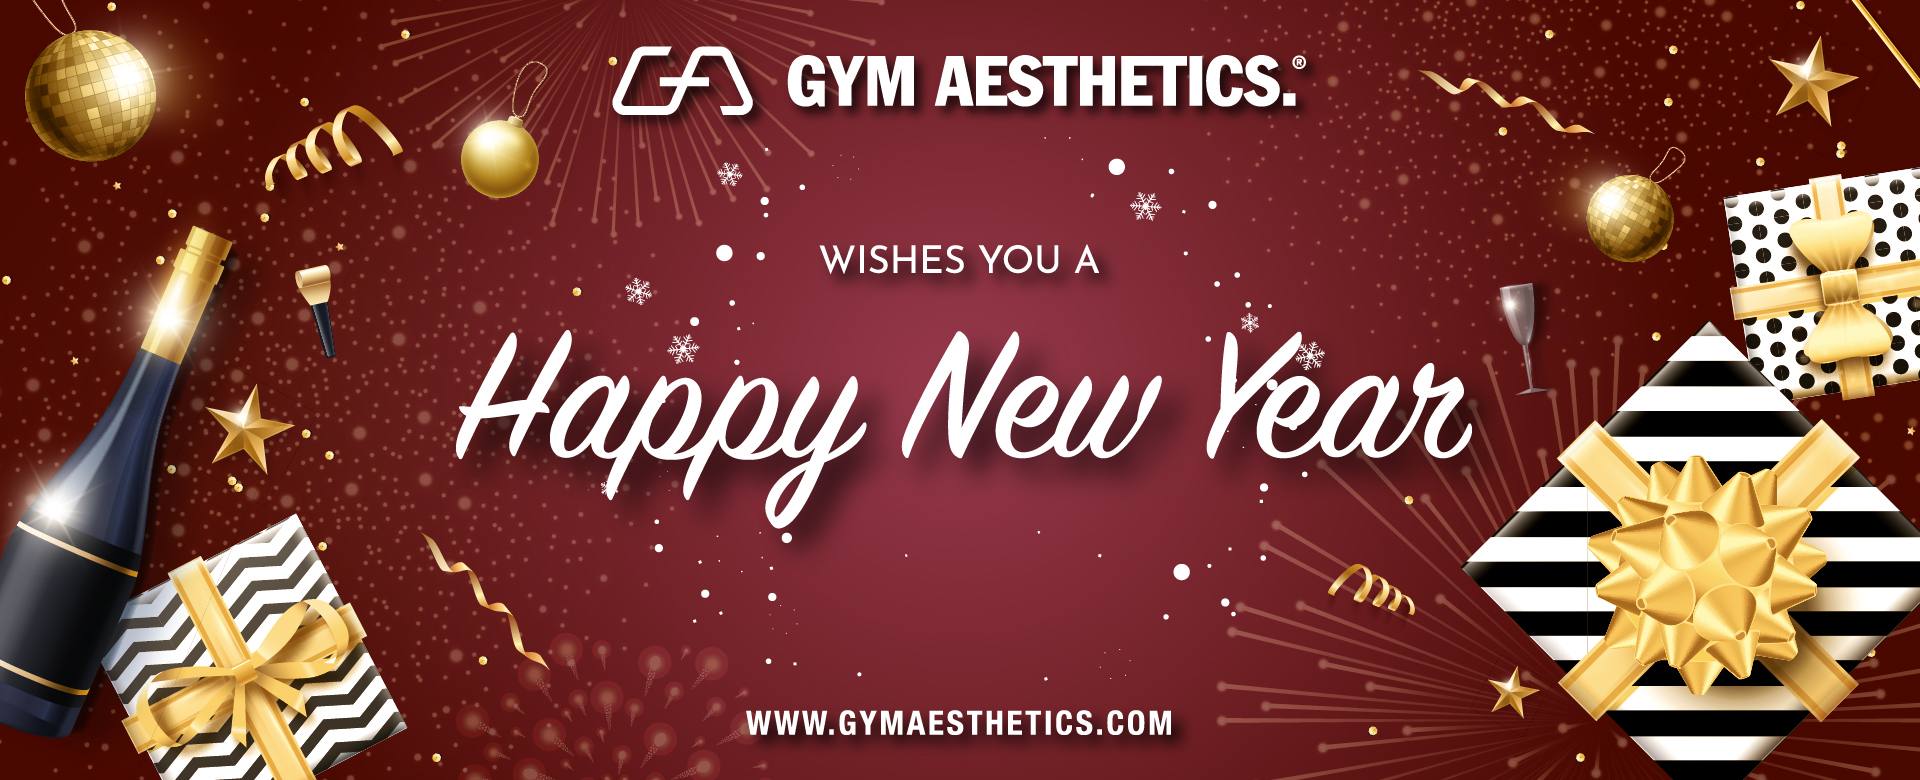 Frohes neues Jahr - Geschenk für Sie oder Ihn - 3 kaufen und 1 gratis bekommen| Gym Aesthetics